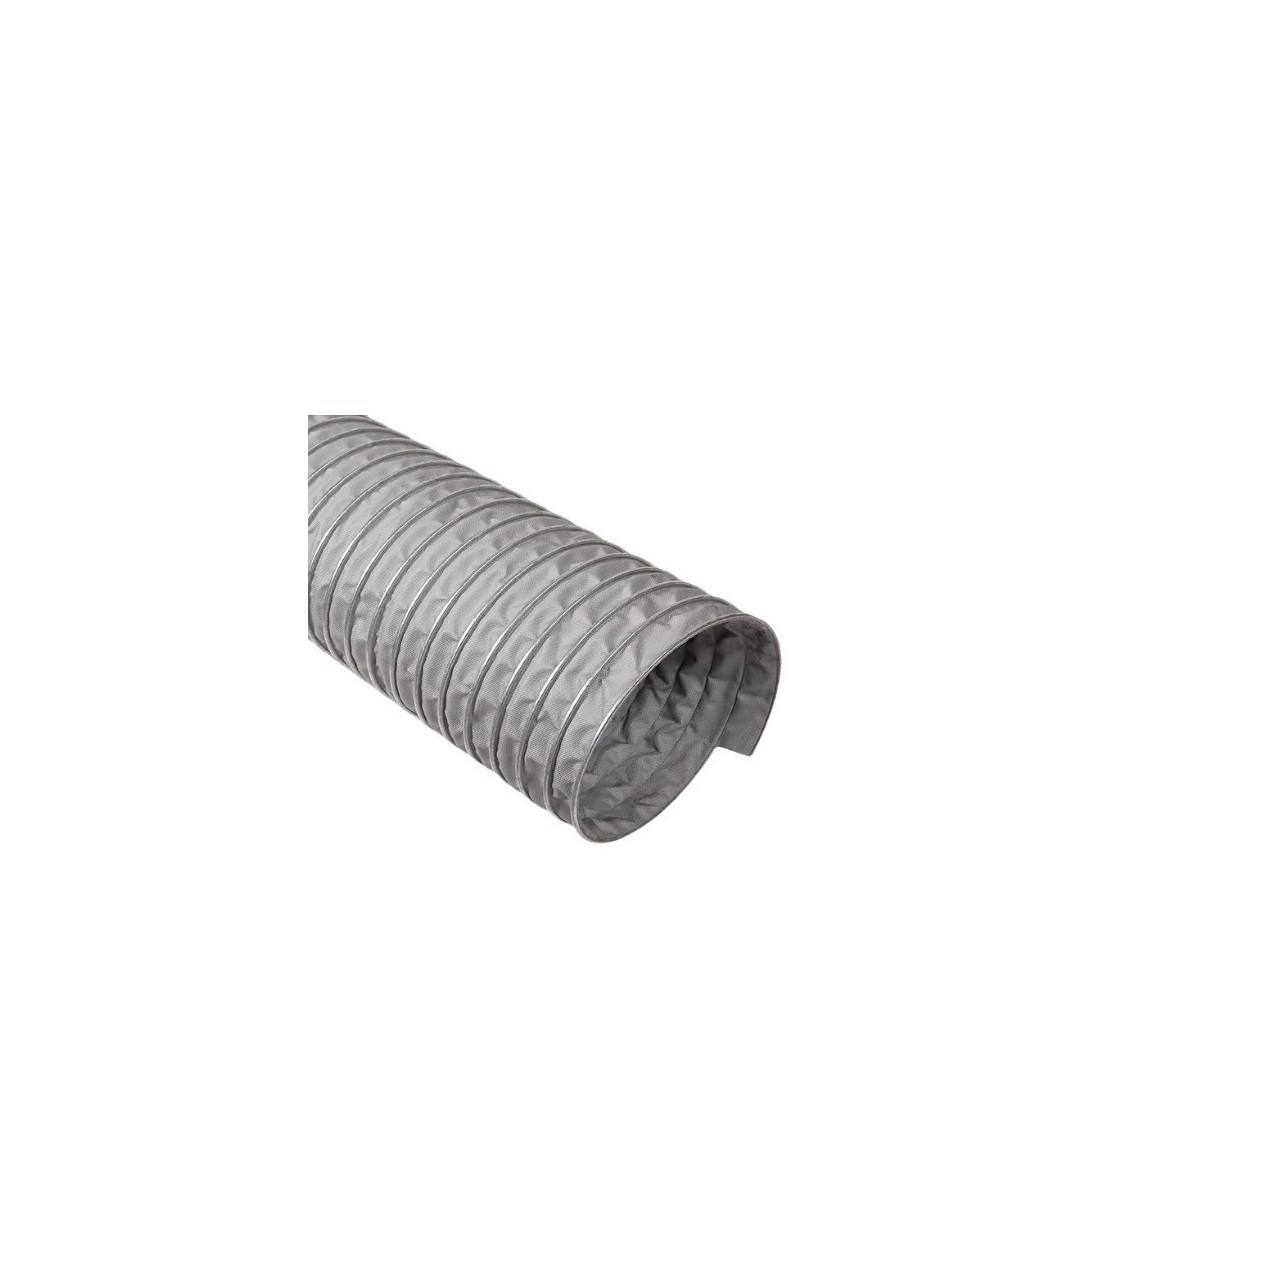 Tubo de aspiración PVC con fibra poliéster (Rollo)